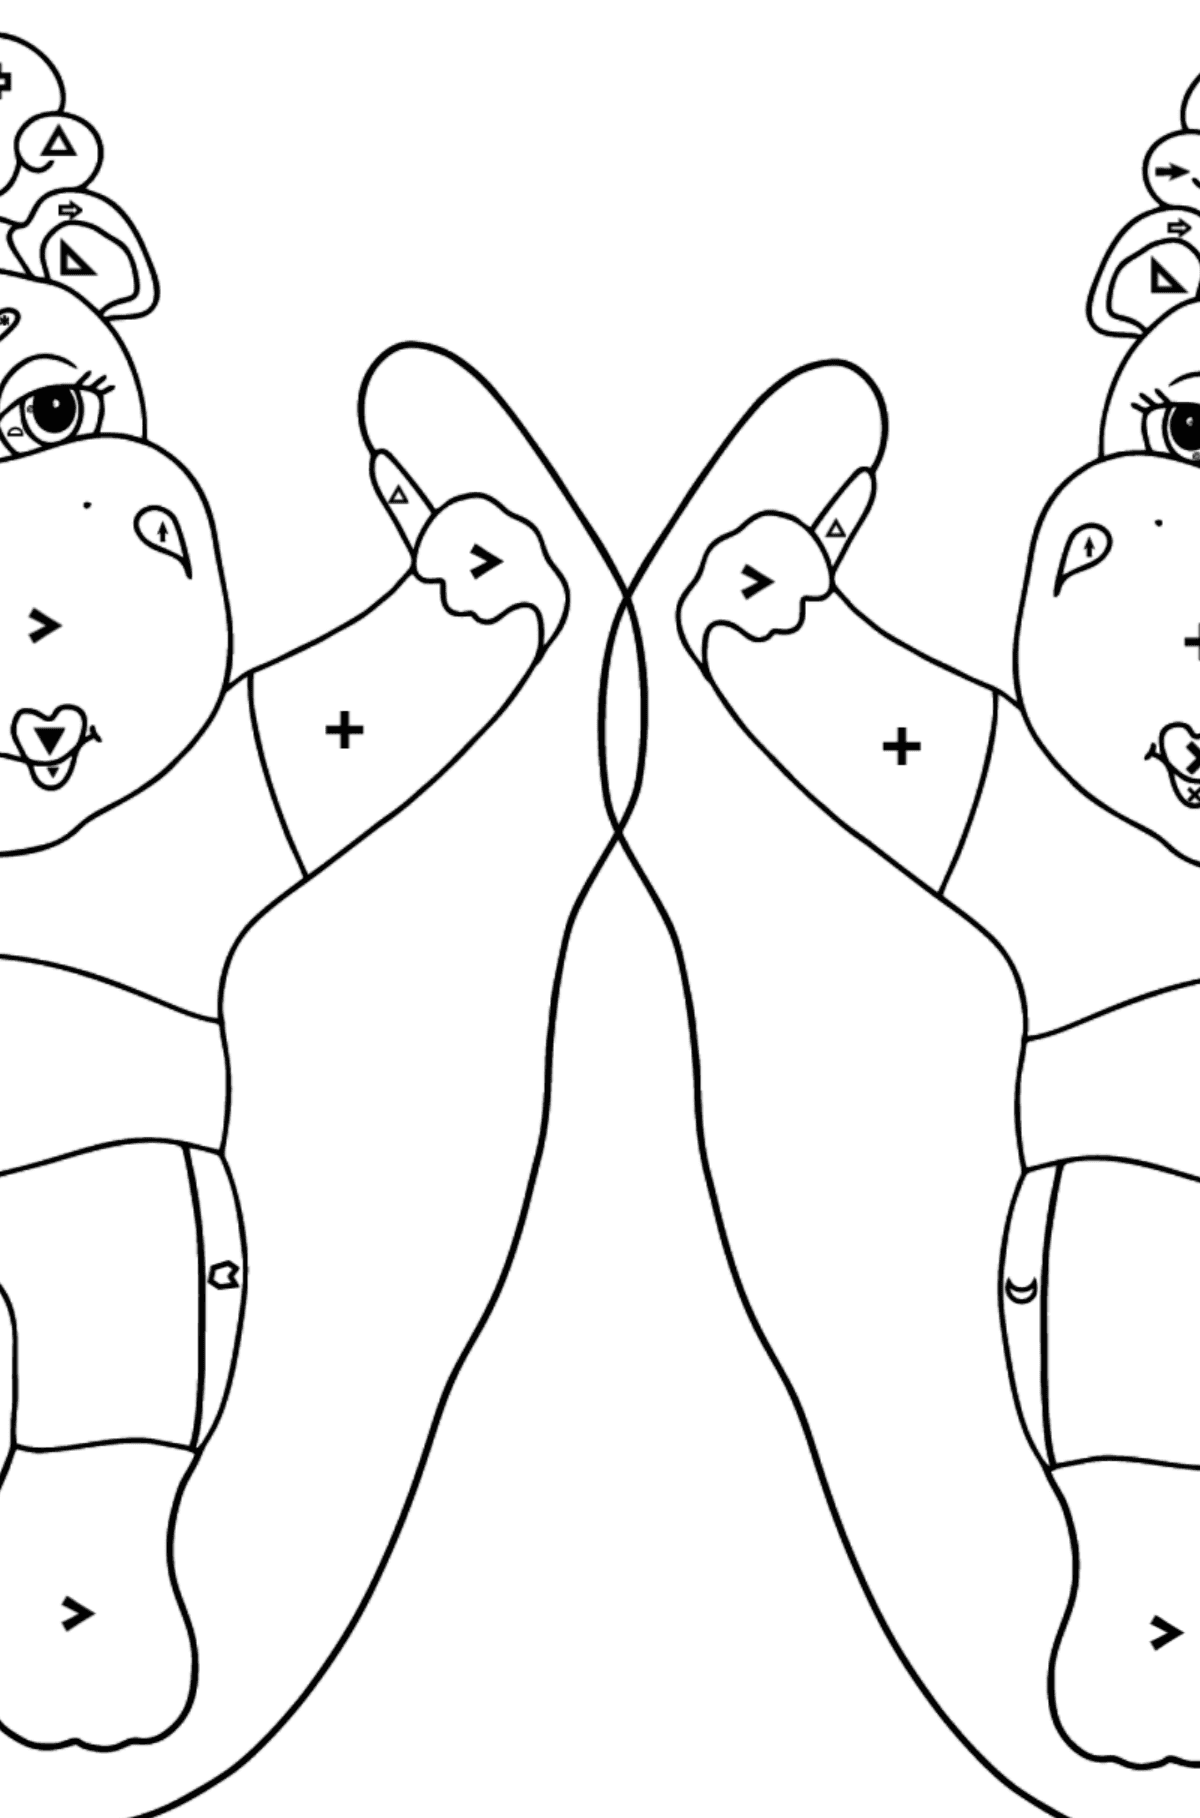 Trudna kolorystyka zabawnych Hipopotamów - Kolorowanie według symboli i figur geometrycznych dla dzieci